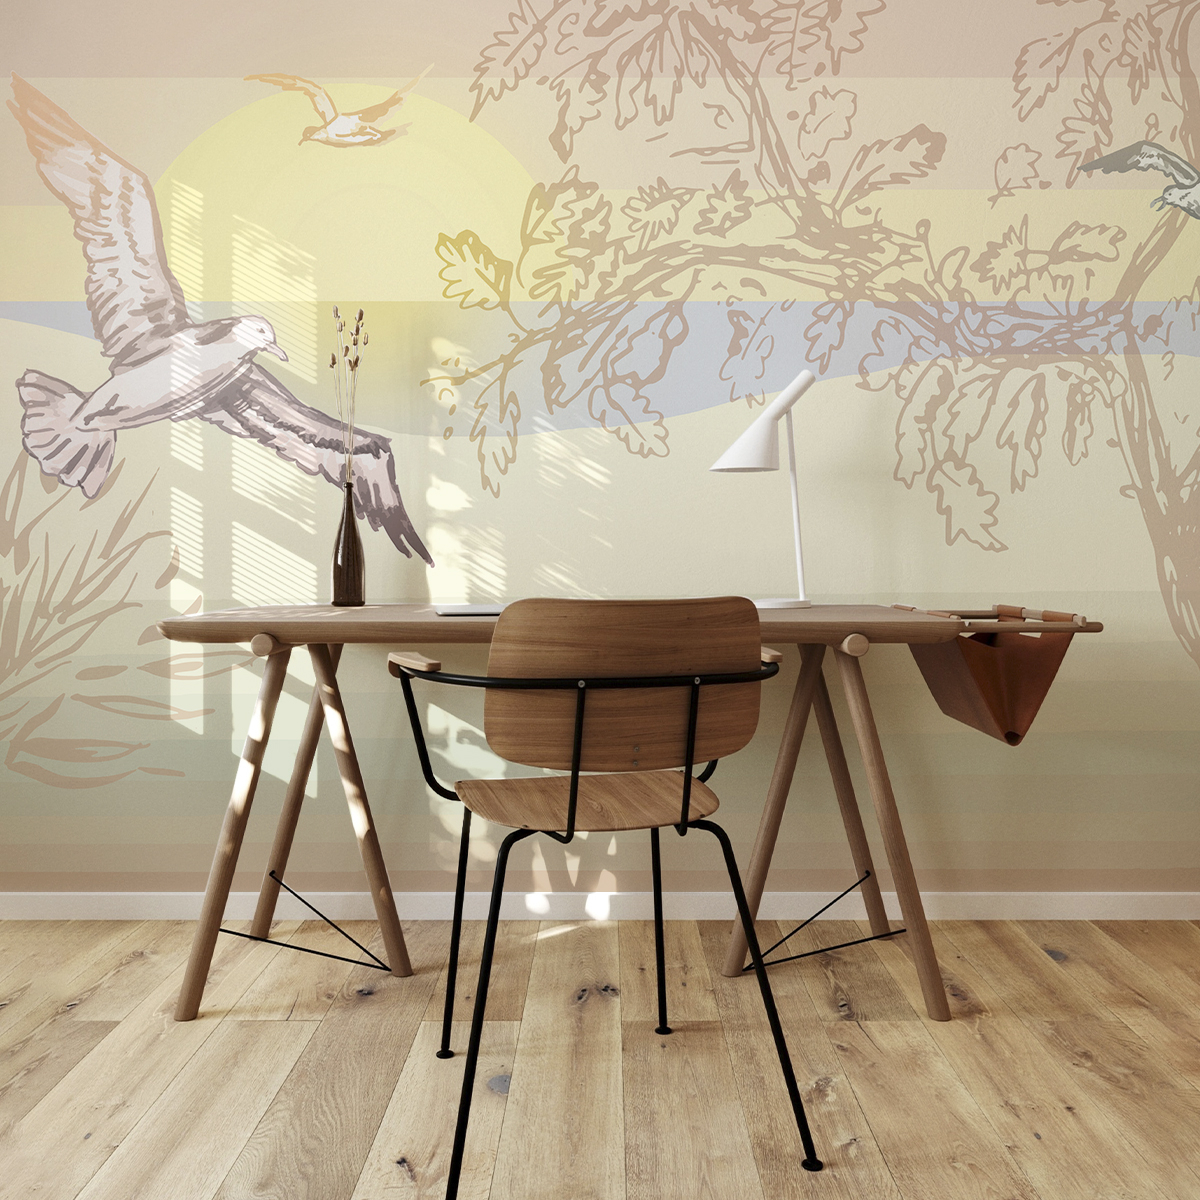 Papier peint panoramique L'Ile aux oiseaux - Collection Lili Bambou Design - Acte-Deco